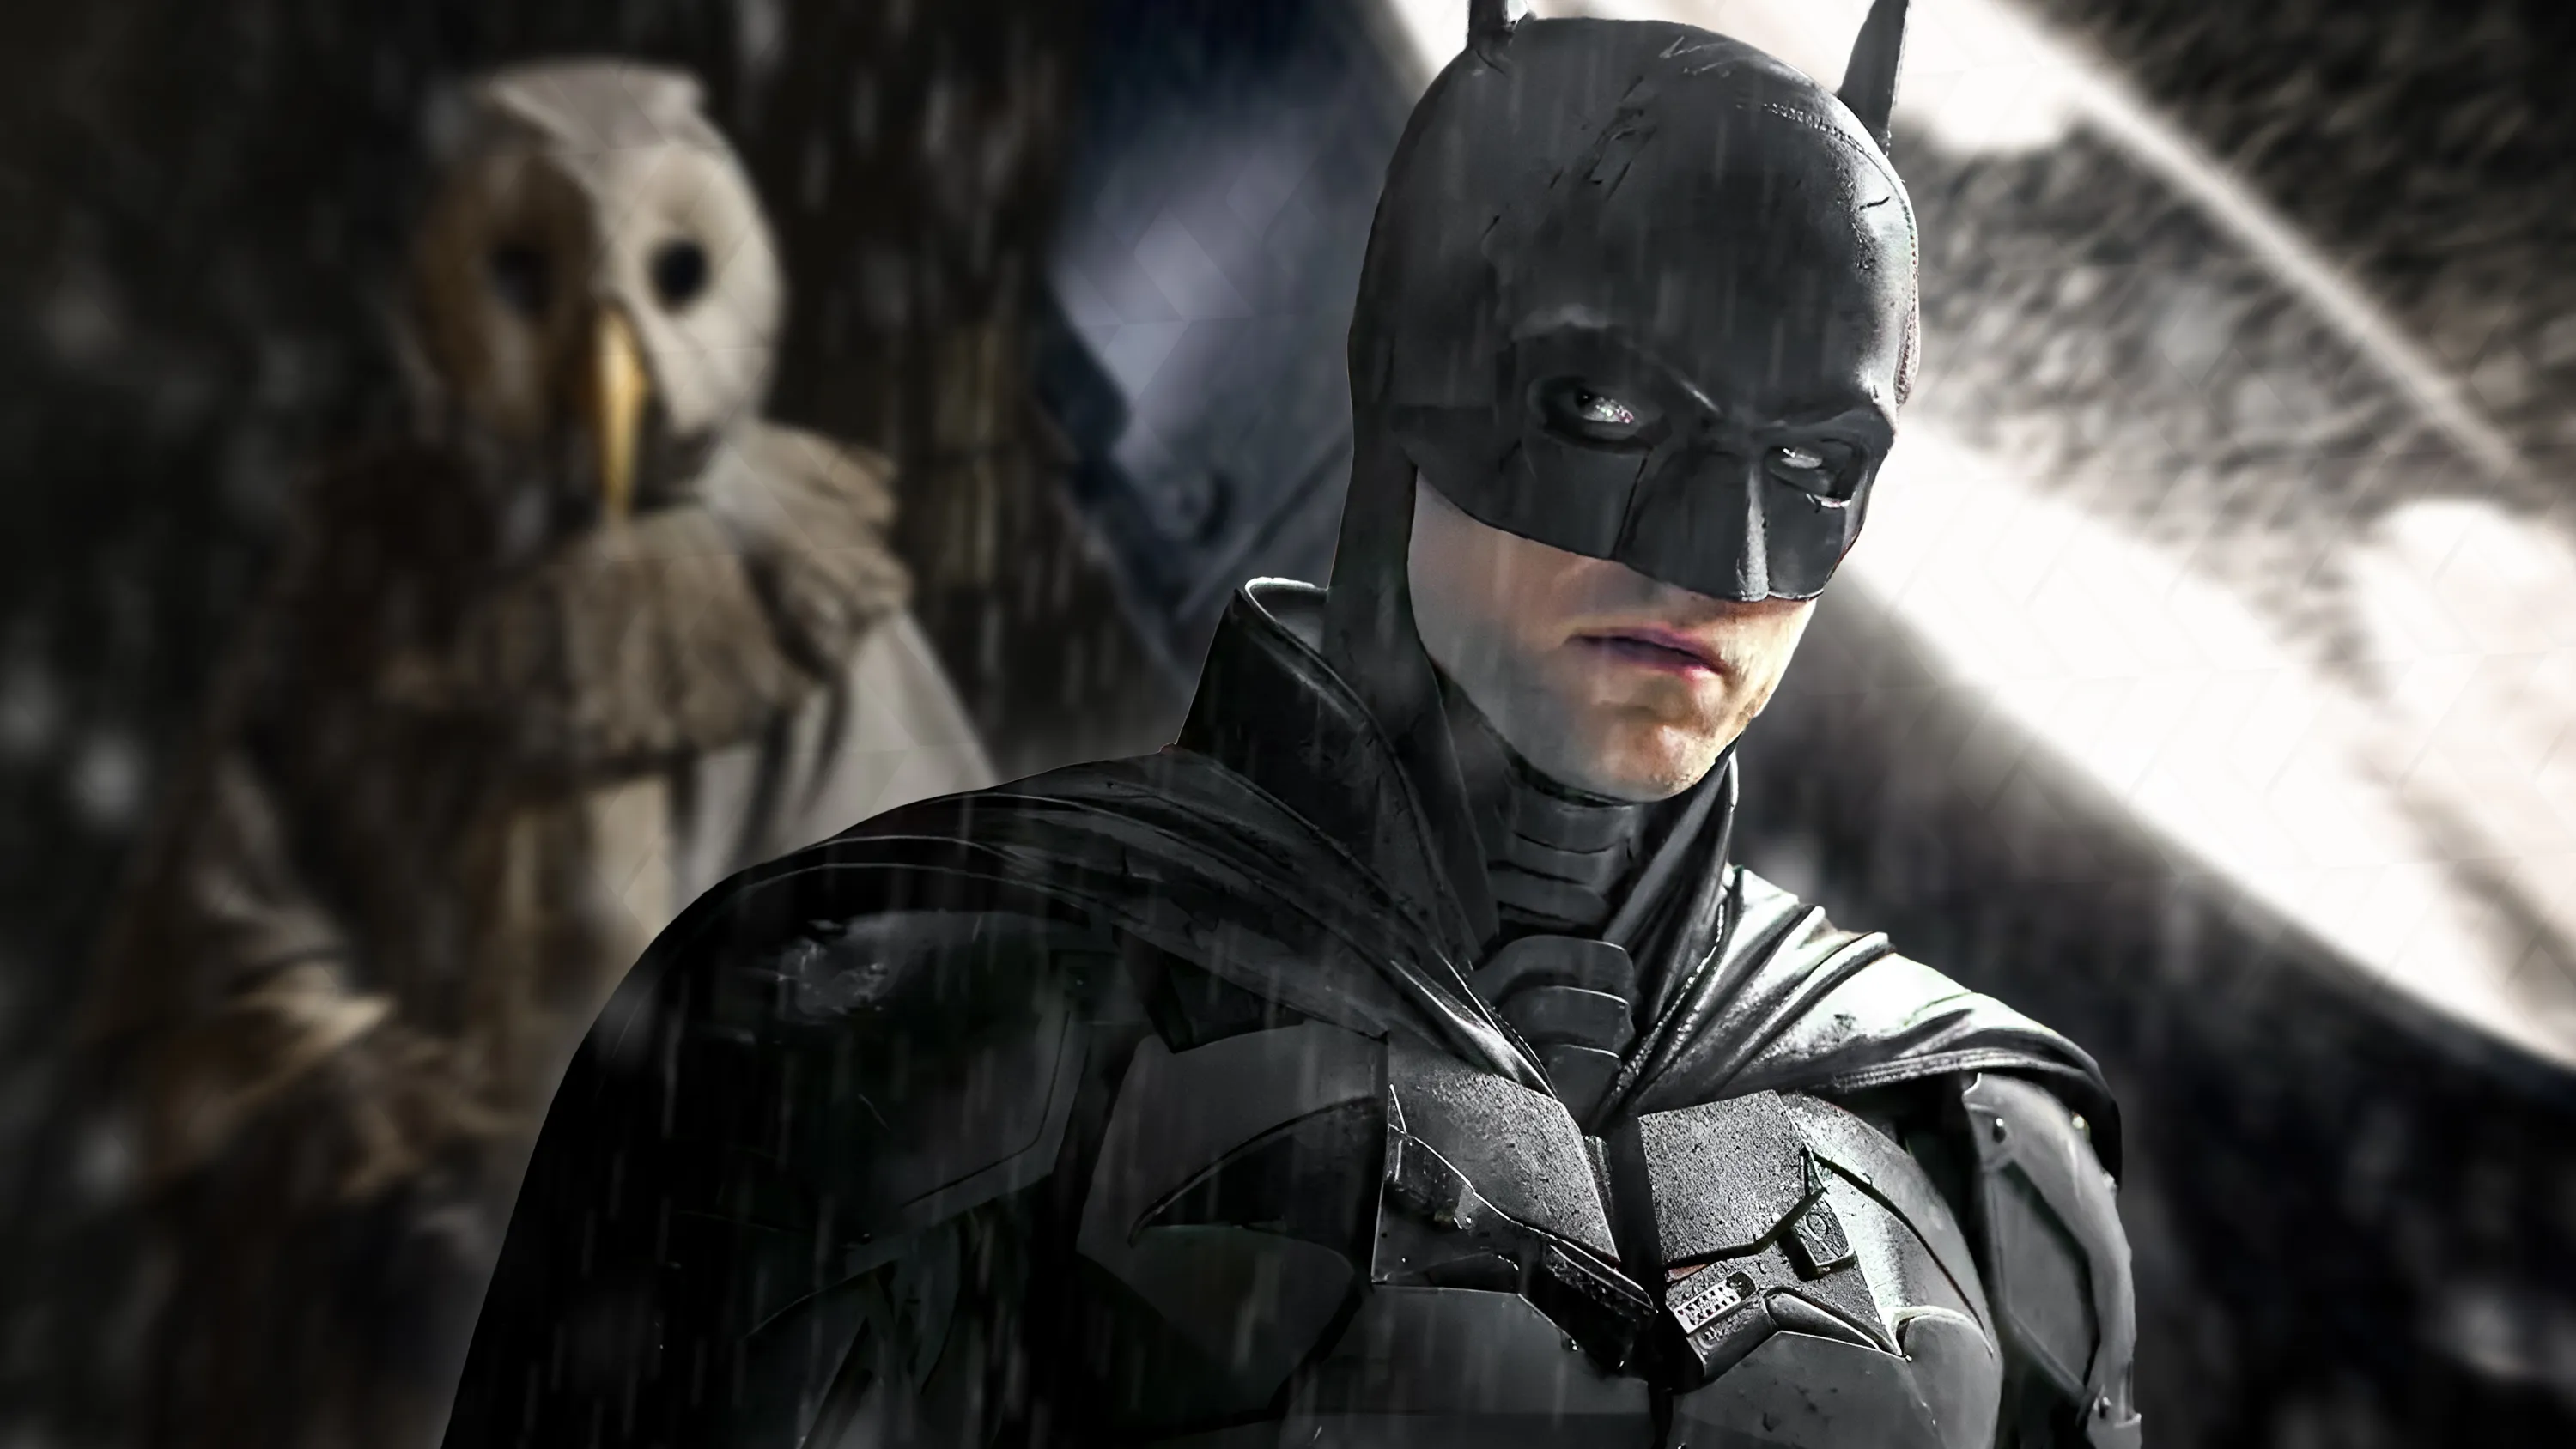 Robert Pattinson's The Batman sequel finally has a confirmed release date